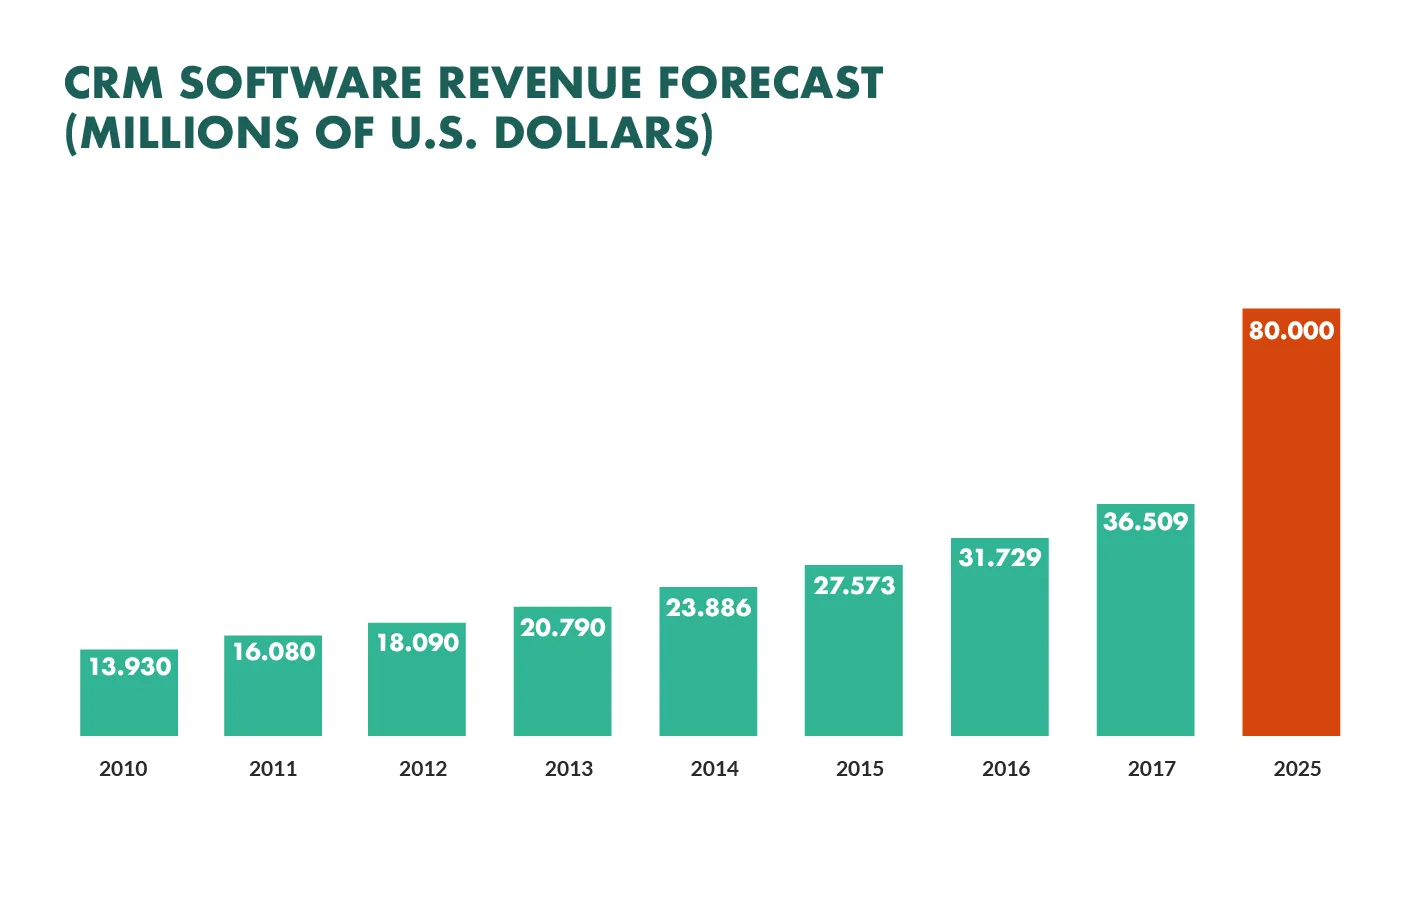 CRM software revenue forecast